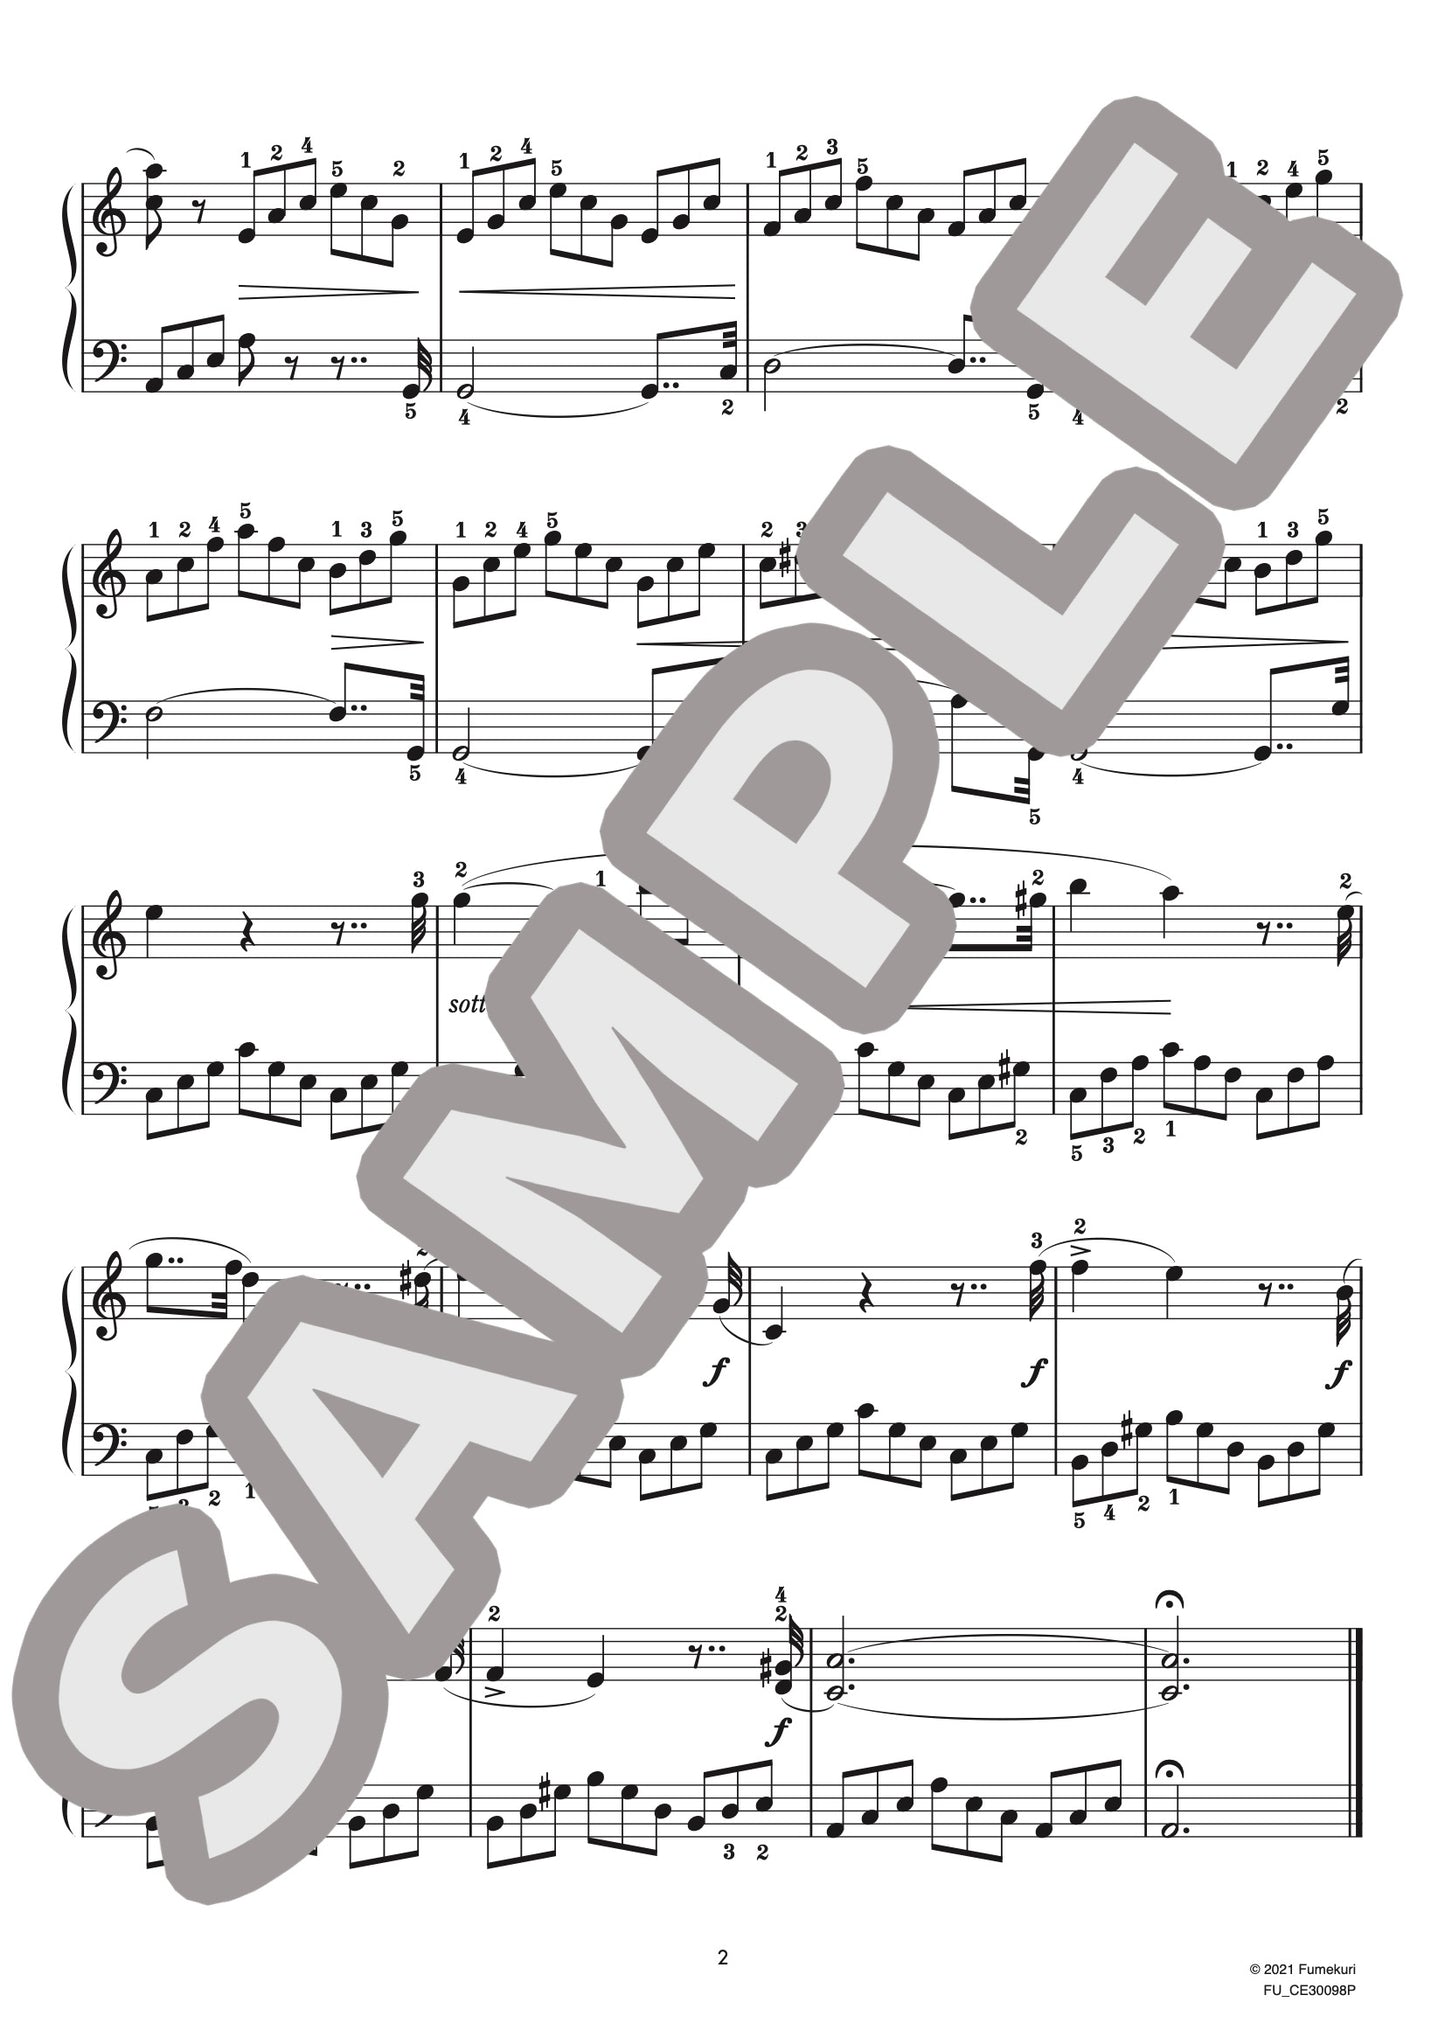 ピアノ・ソナタ 第1番 第1楽章（ロベルト・シューマン) / クラシック・オリジナル楽曲【初級】